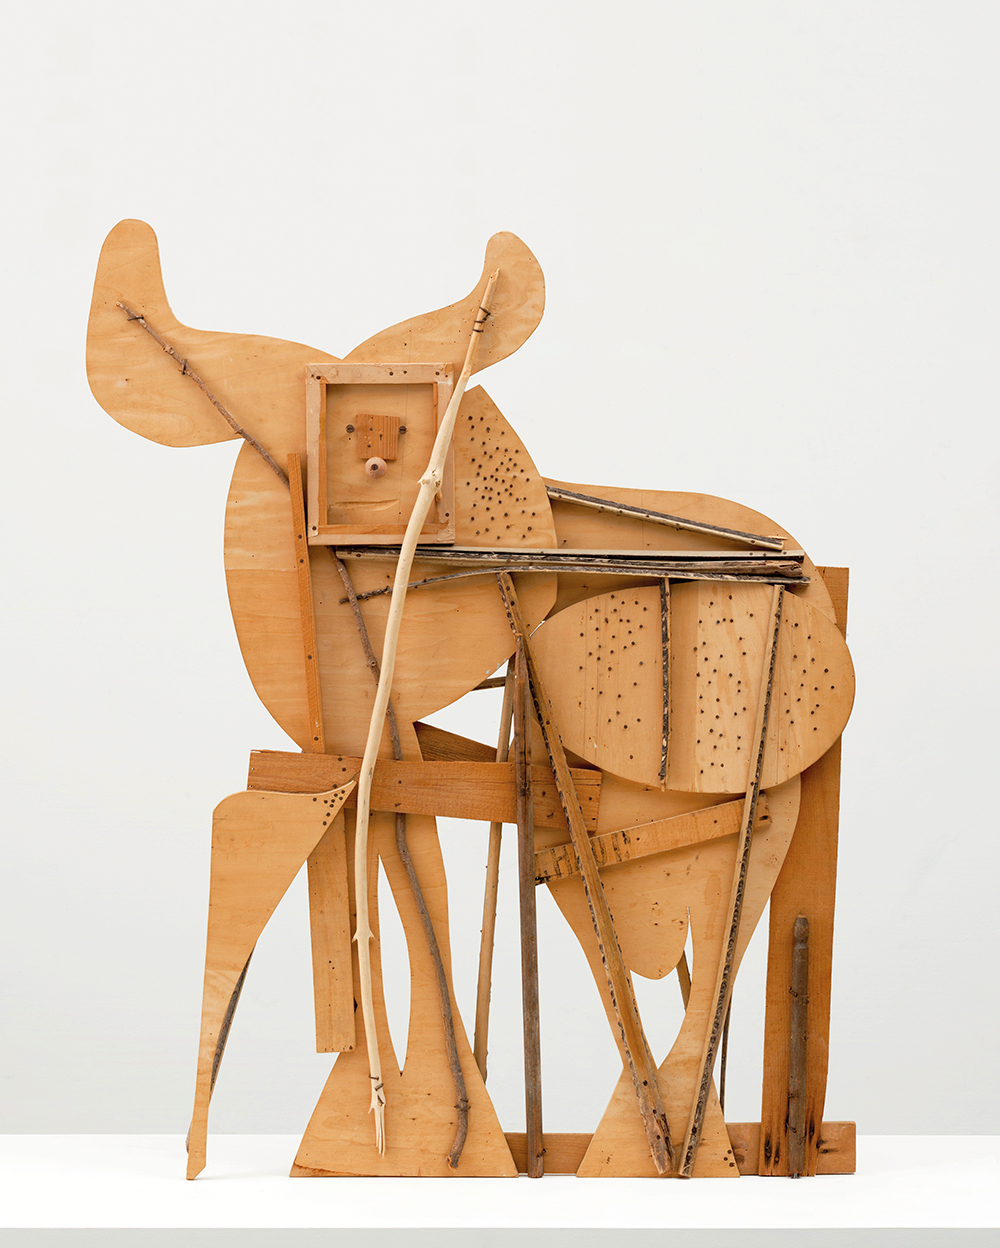 Toro. Escultura de madera donada por Jacqueline Roque, última esposa de Picasso al MoMA de Nueva York por su compromiso con la obra del artista.